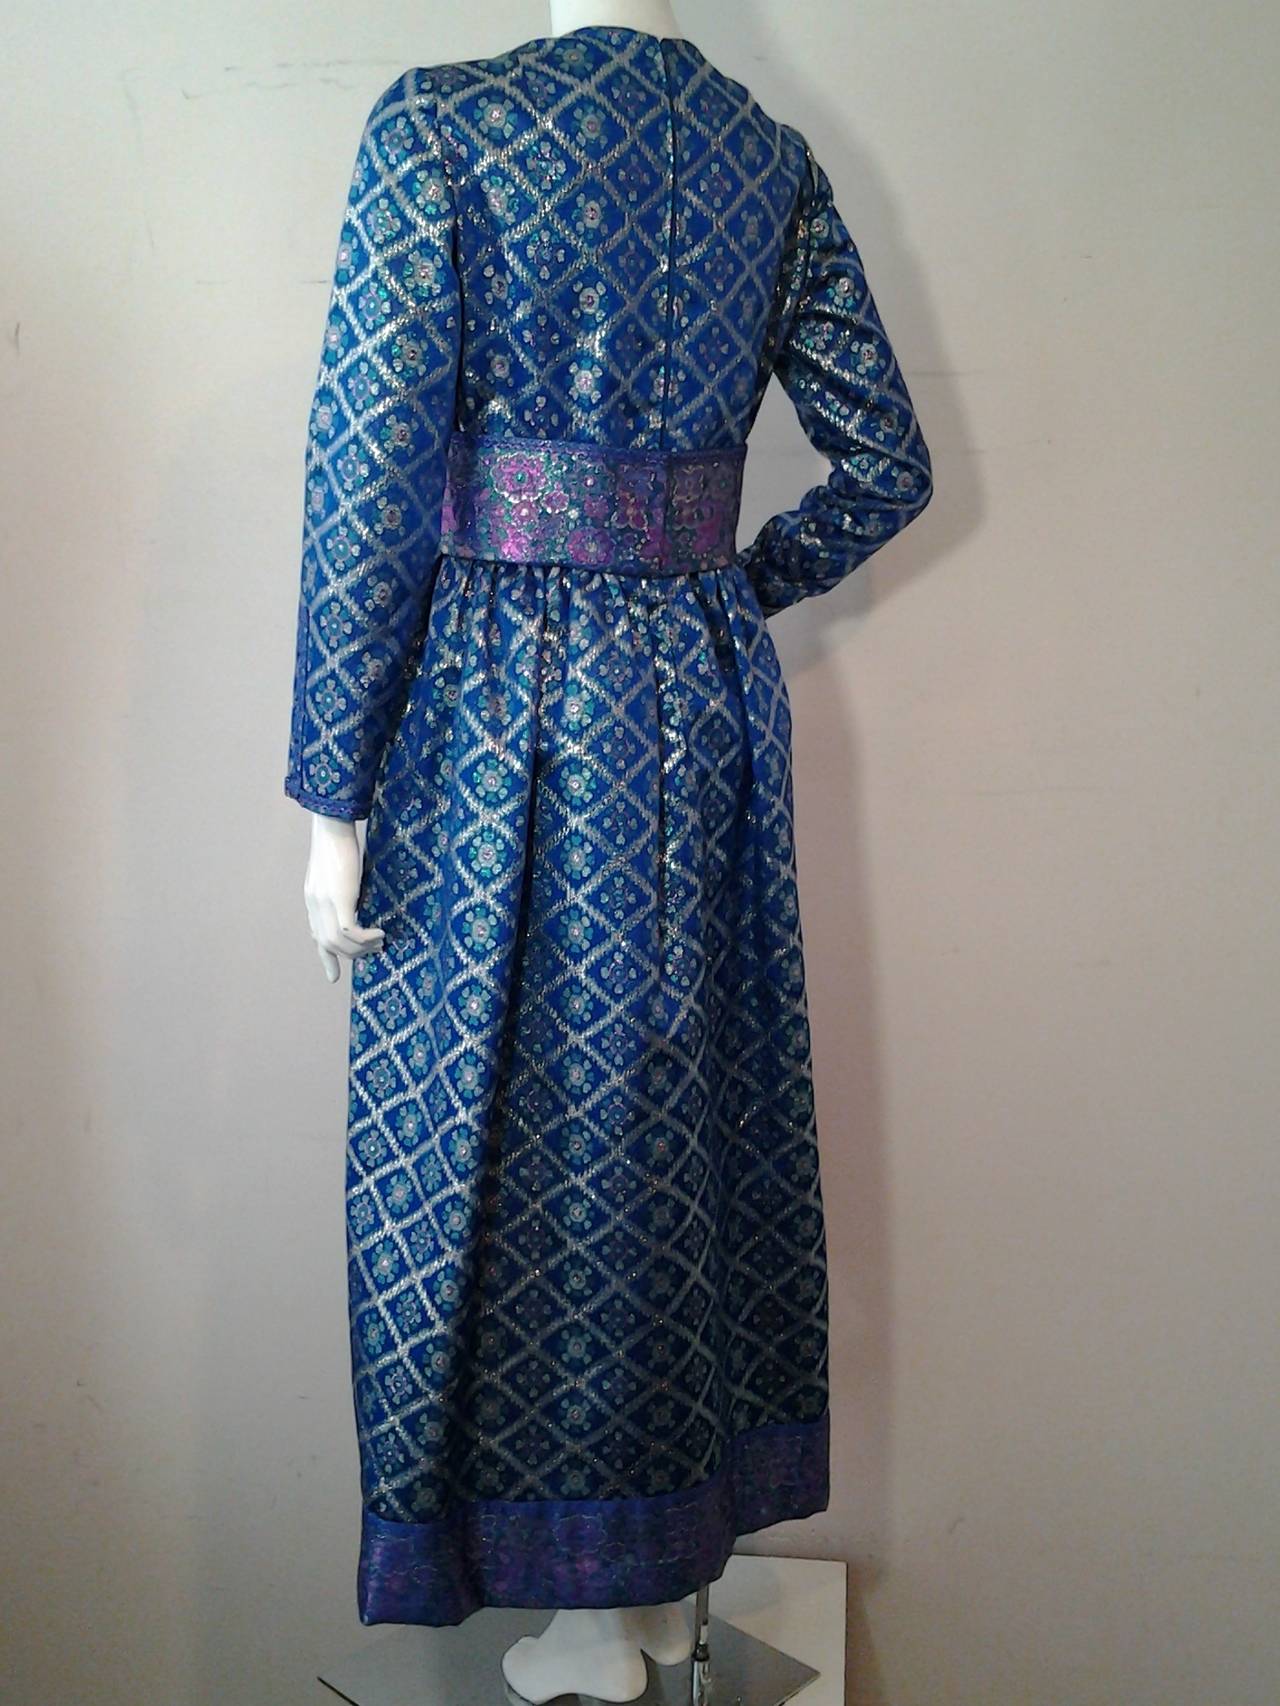 Women's 1960s Oscar de la Renta Metallic Brocade Gown w/ Obi-Inspired Sash